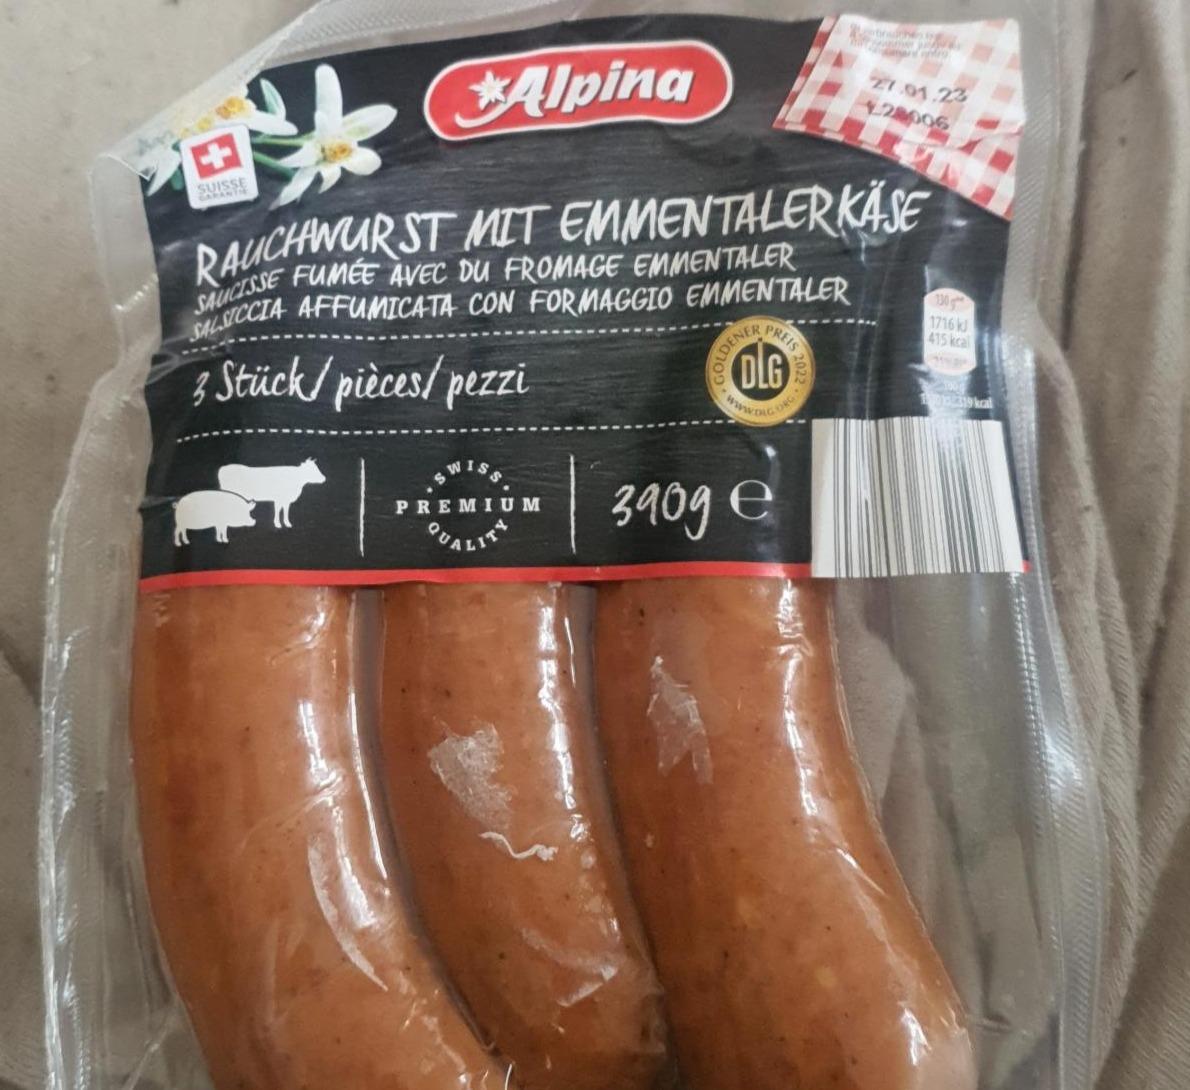 Fotografie - Rauchwurst mit emmentalerkäse Alpina